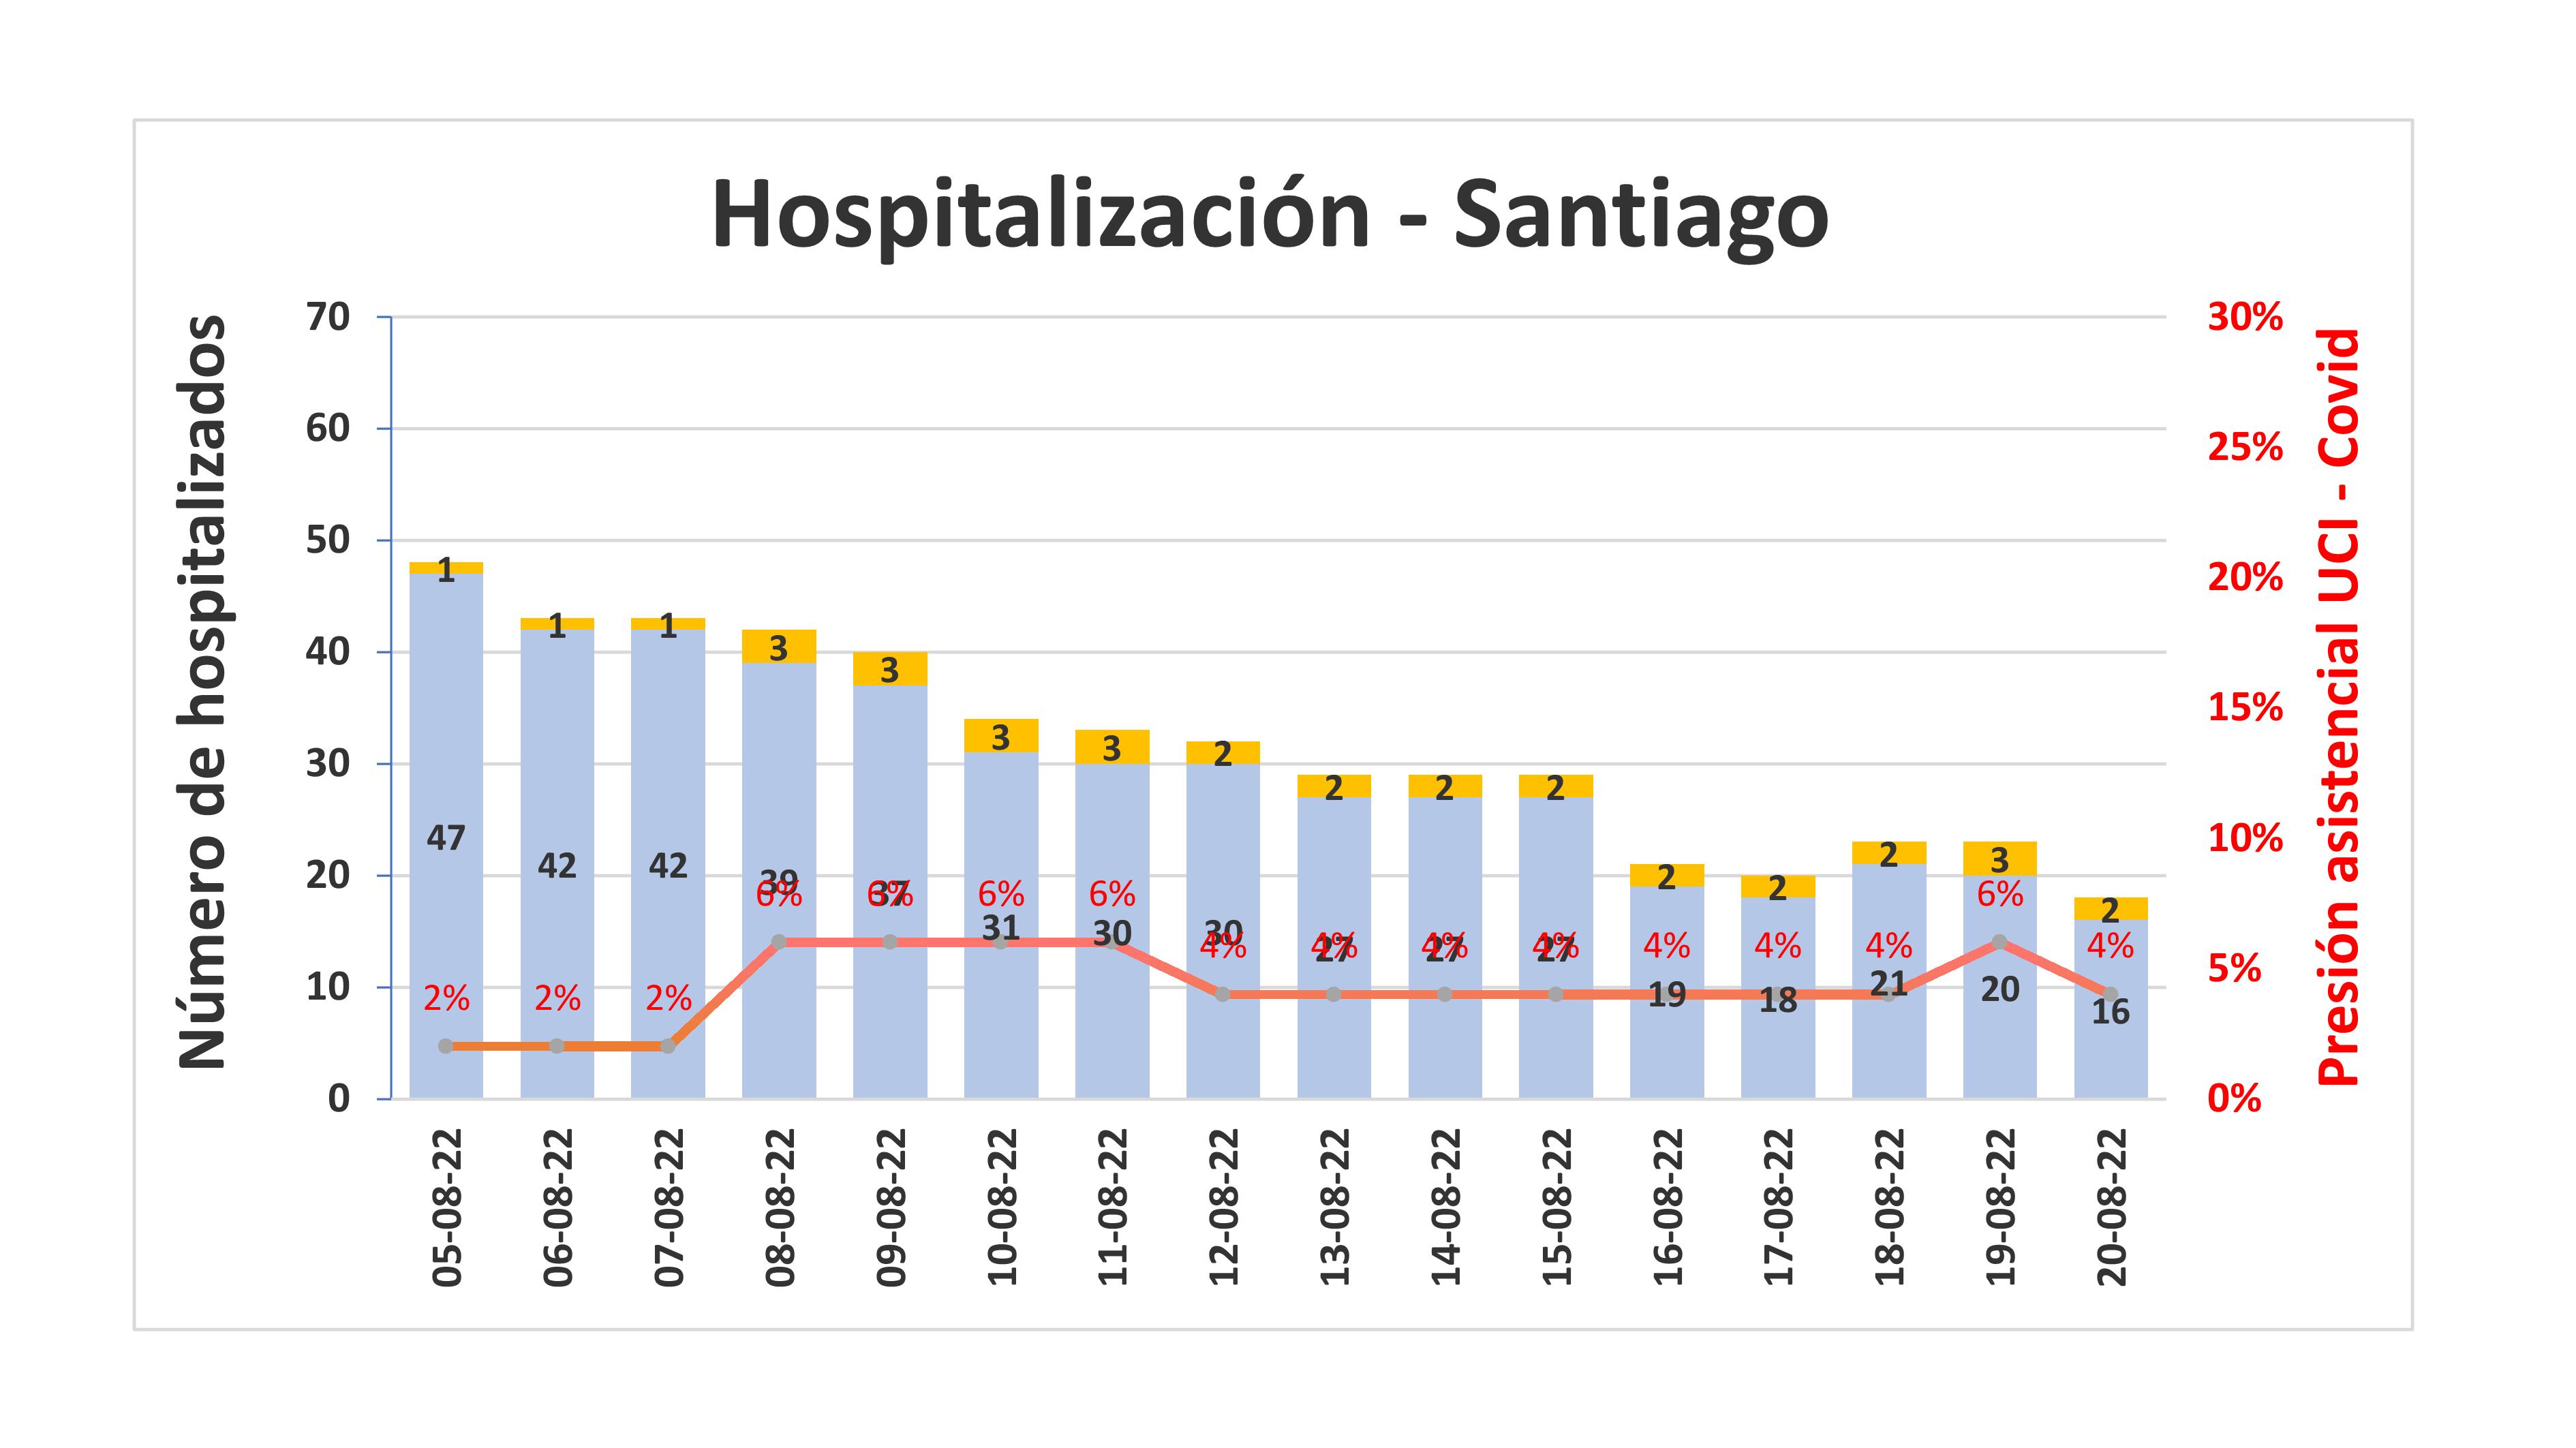 Hospitalización na área de Santiago